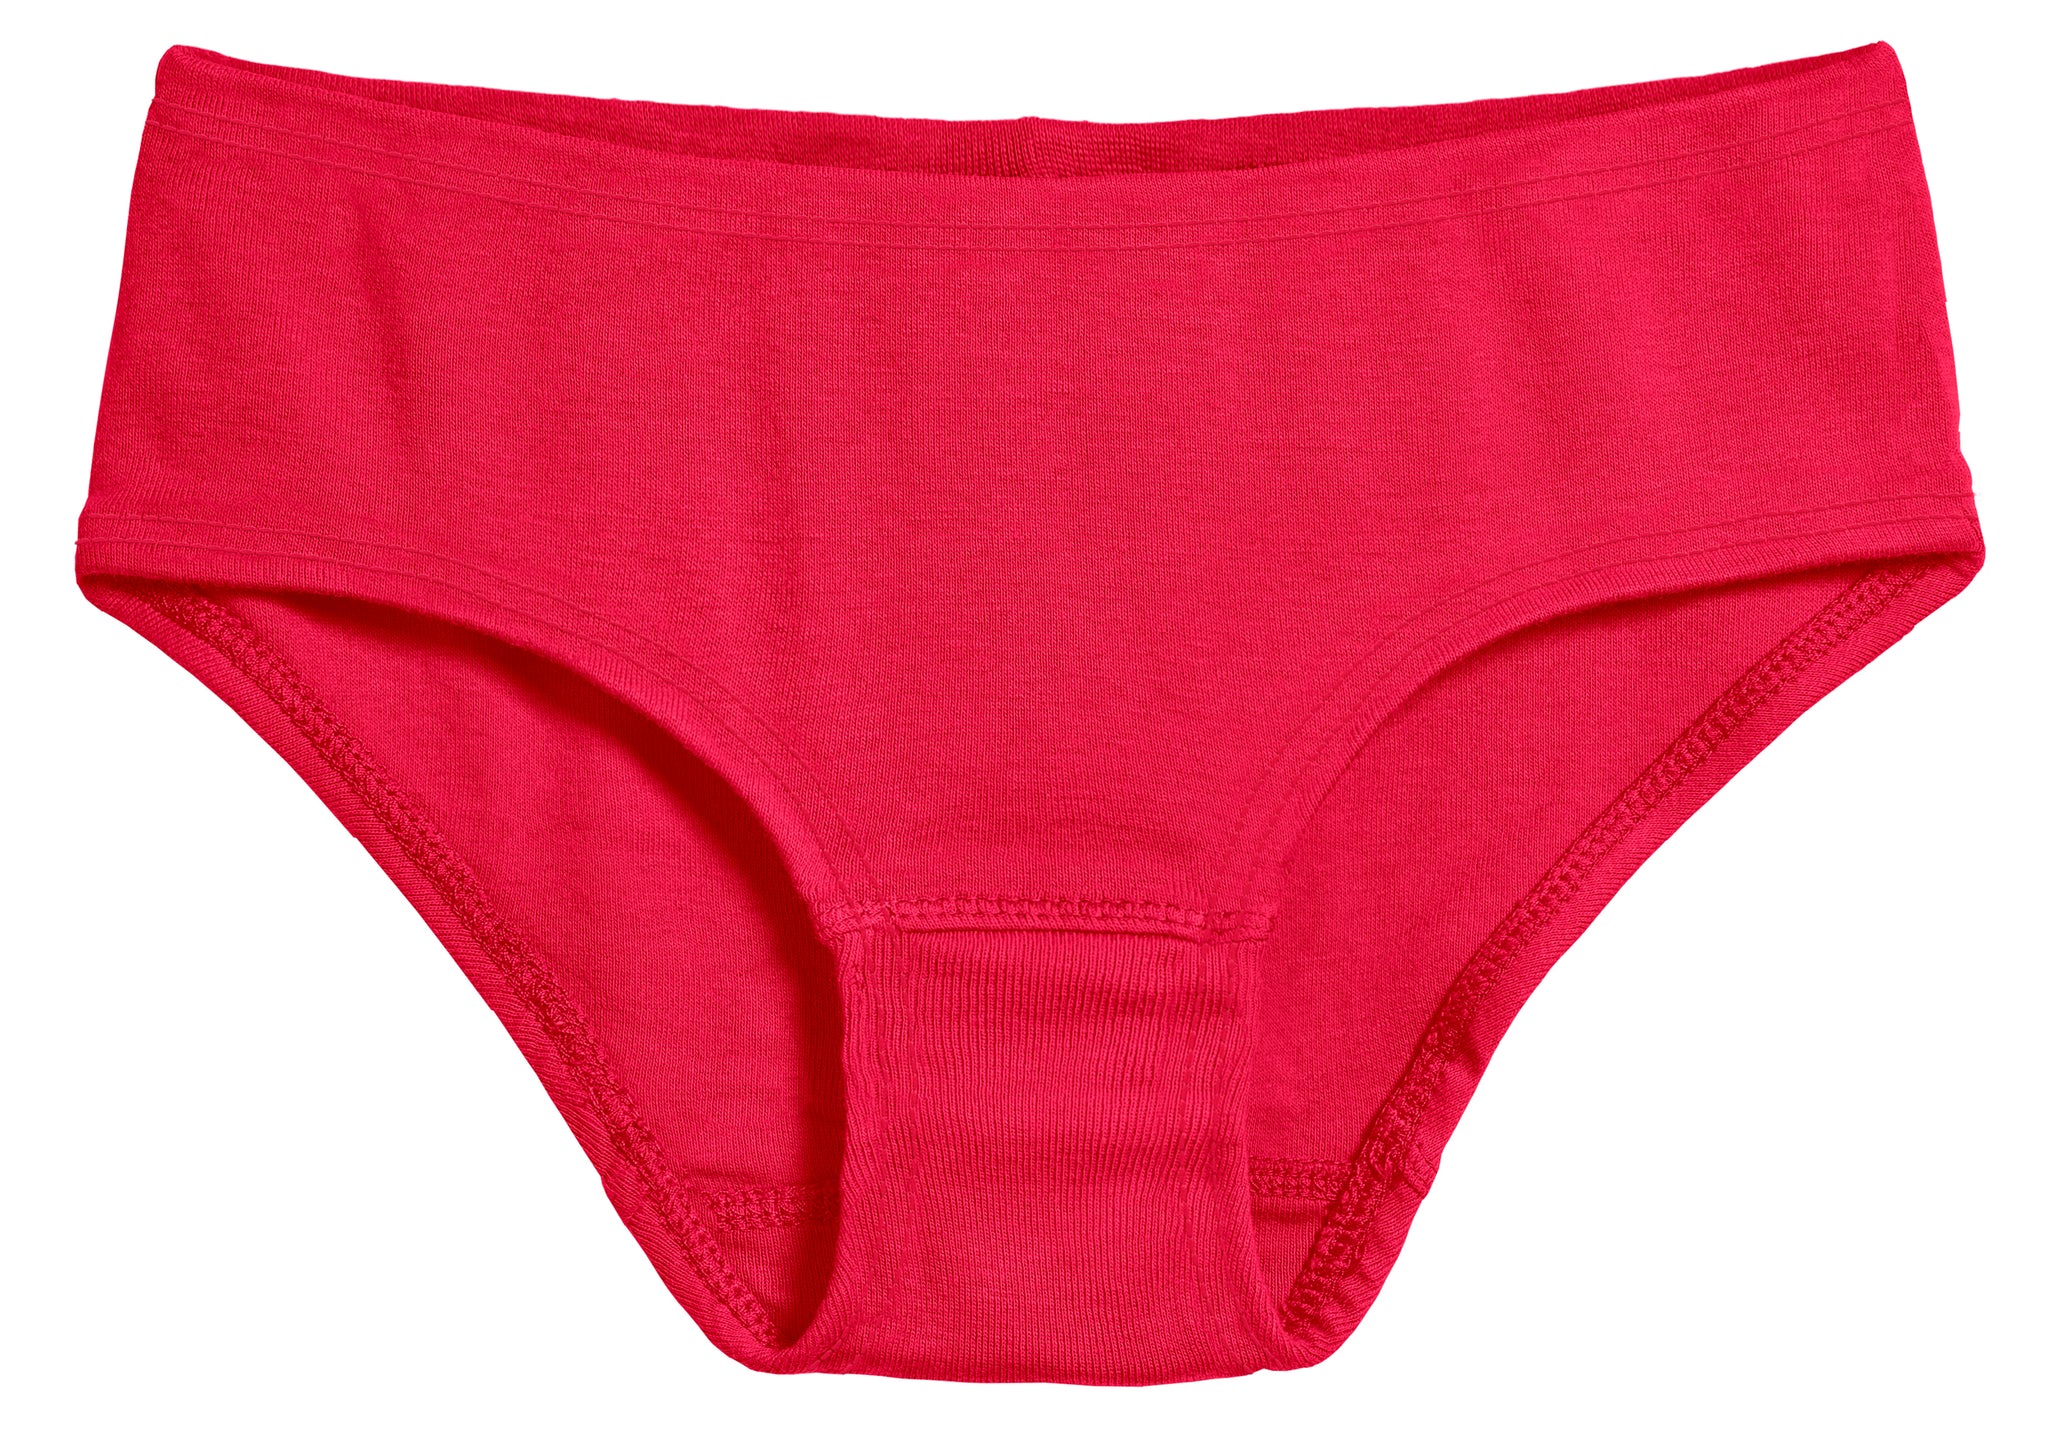 Women's 100% Cotton Underwear - Organic Cotton Underwear & Panties for Women